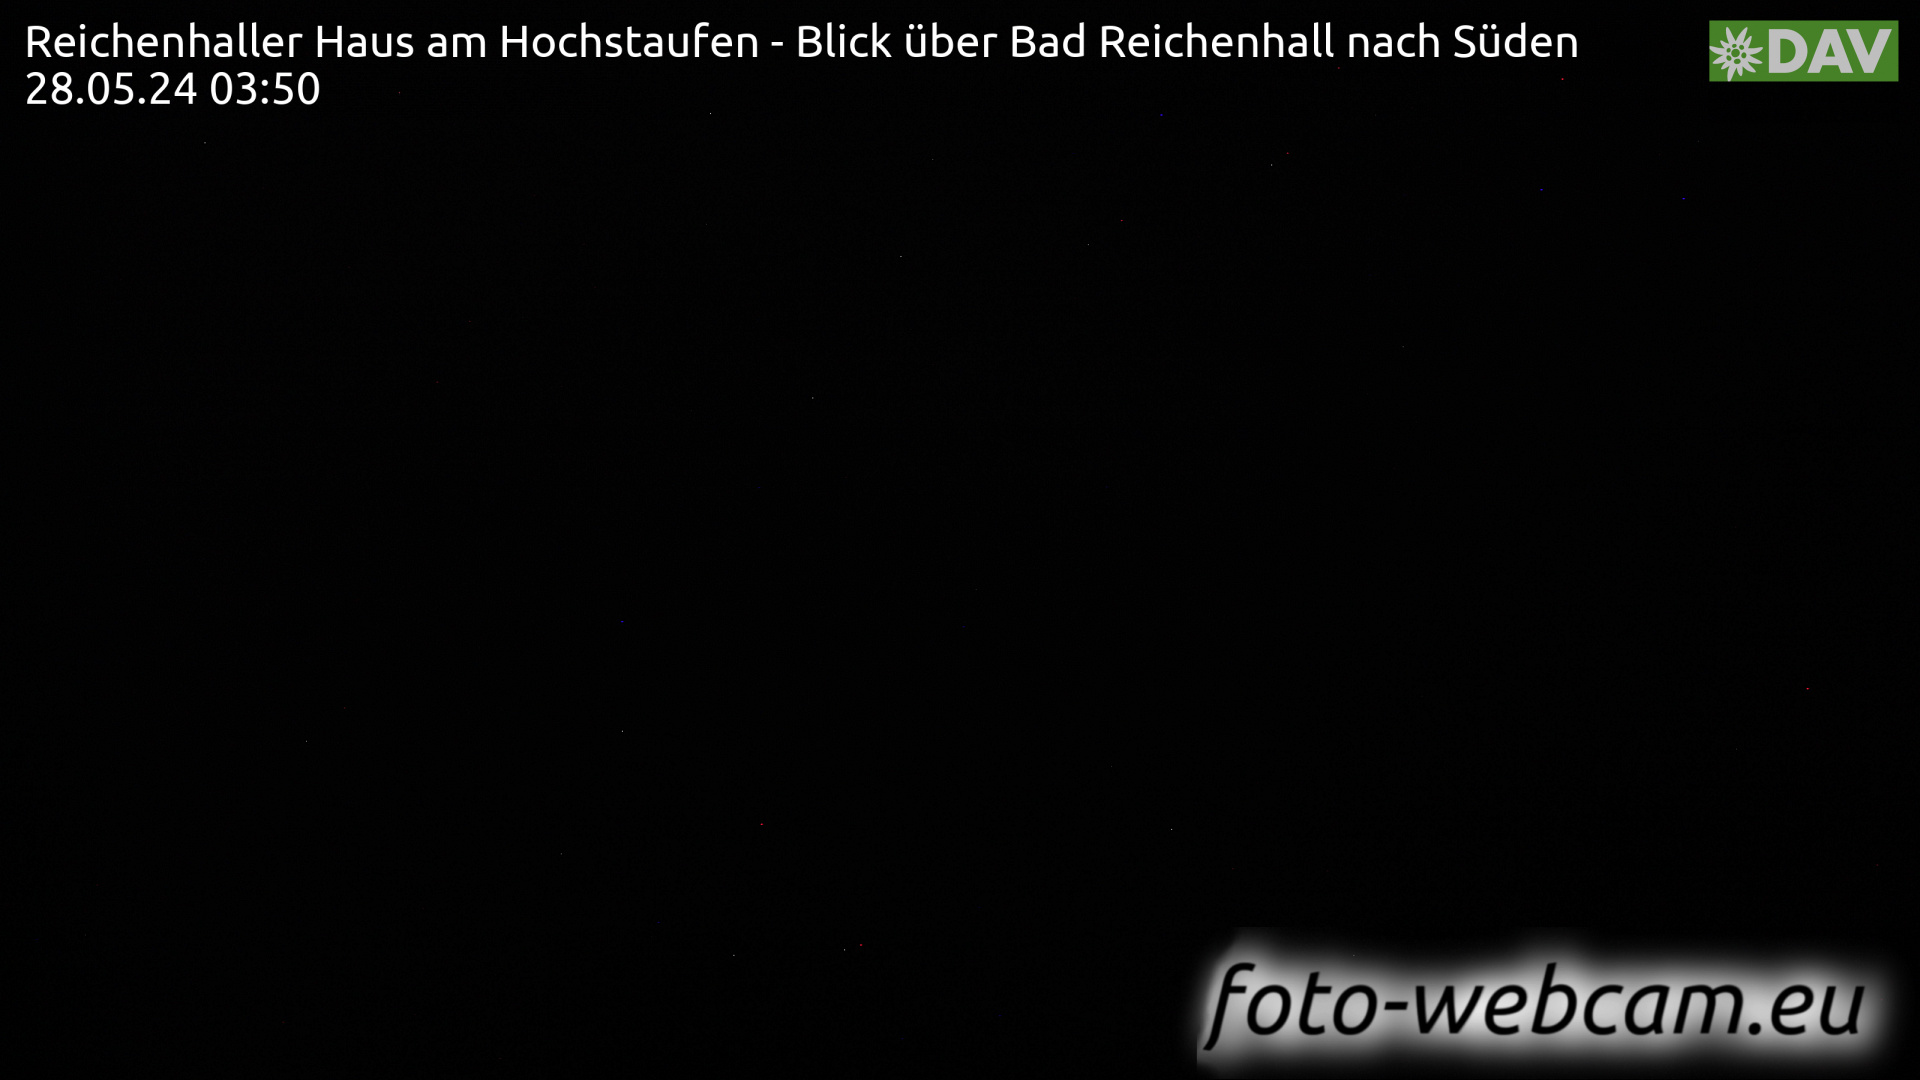 Bad Reichenhall Sa. 03:55